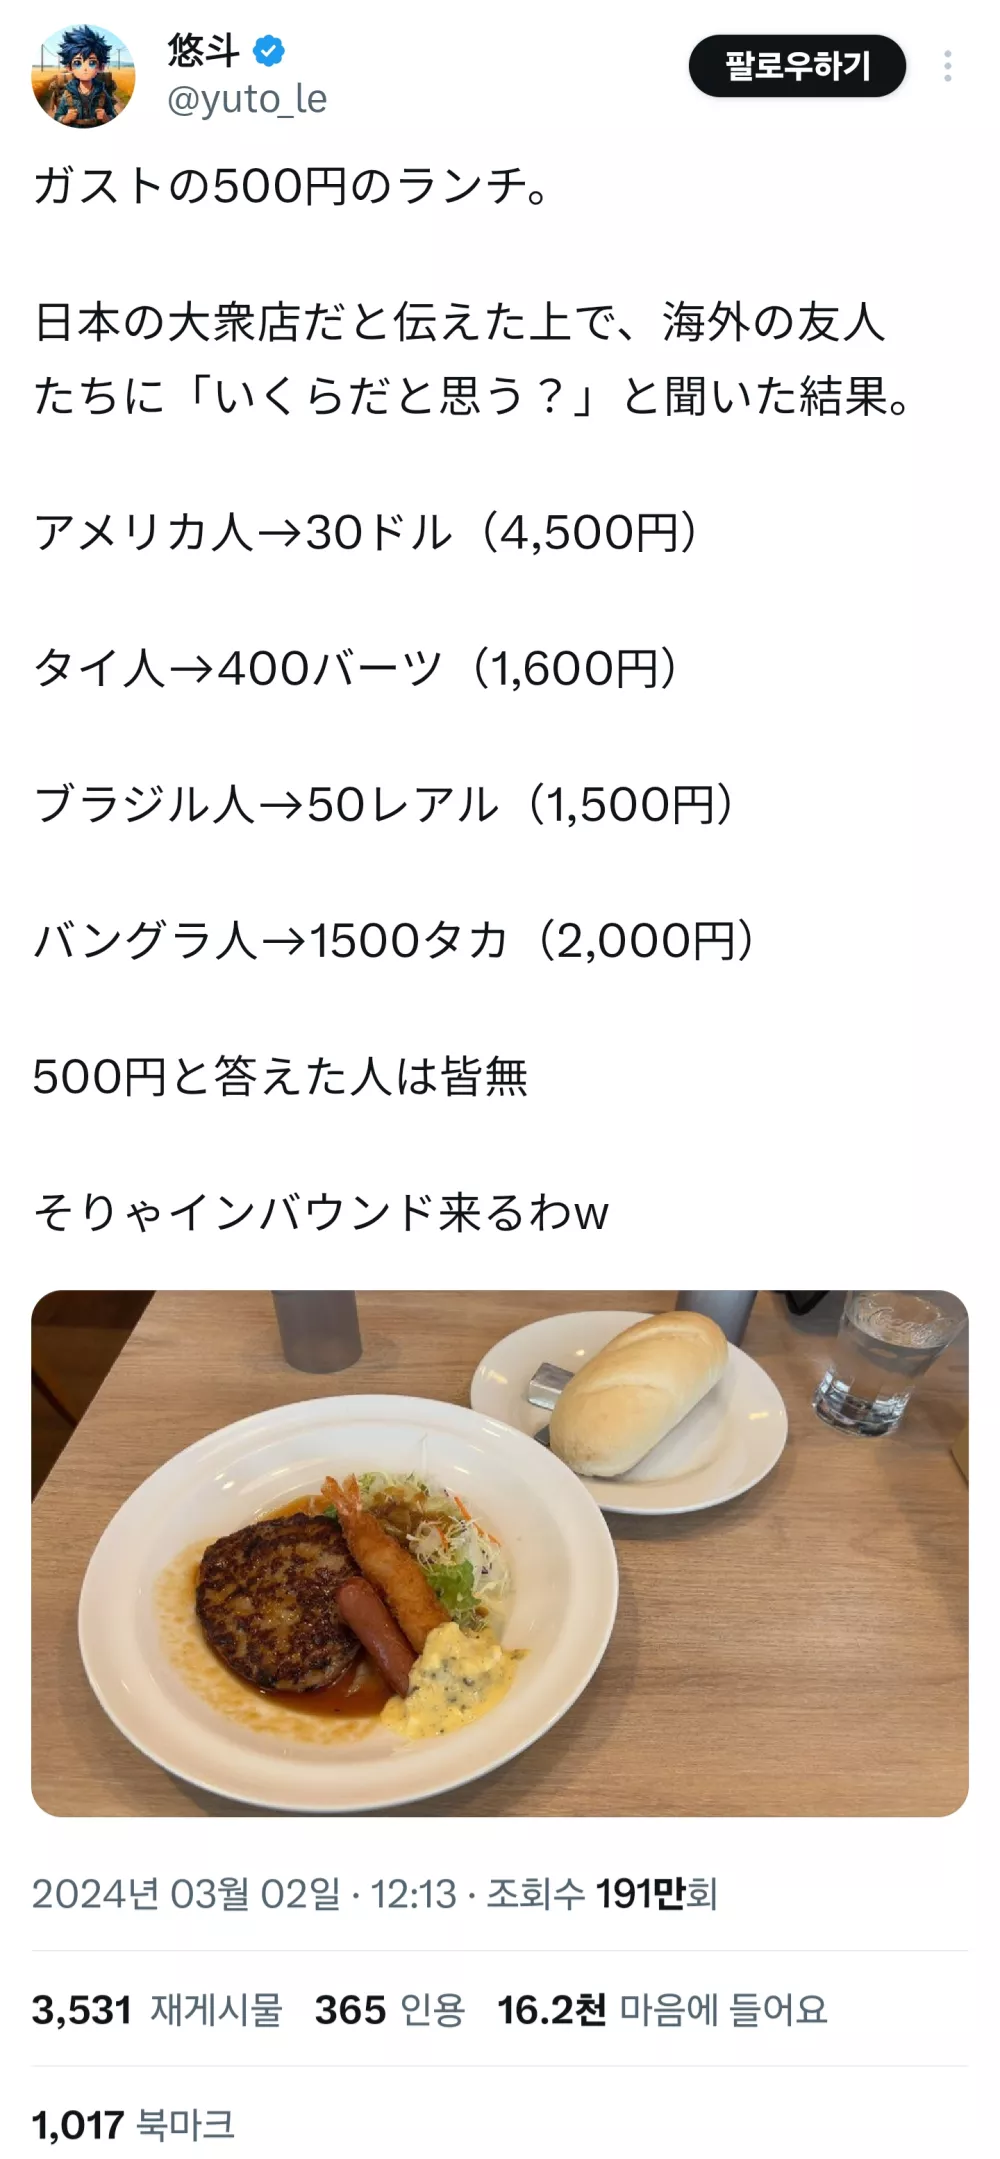 해외 친구들에게 점심값 물어본 일본인